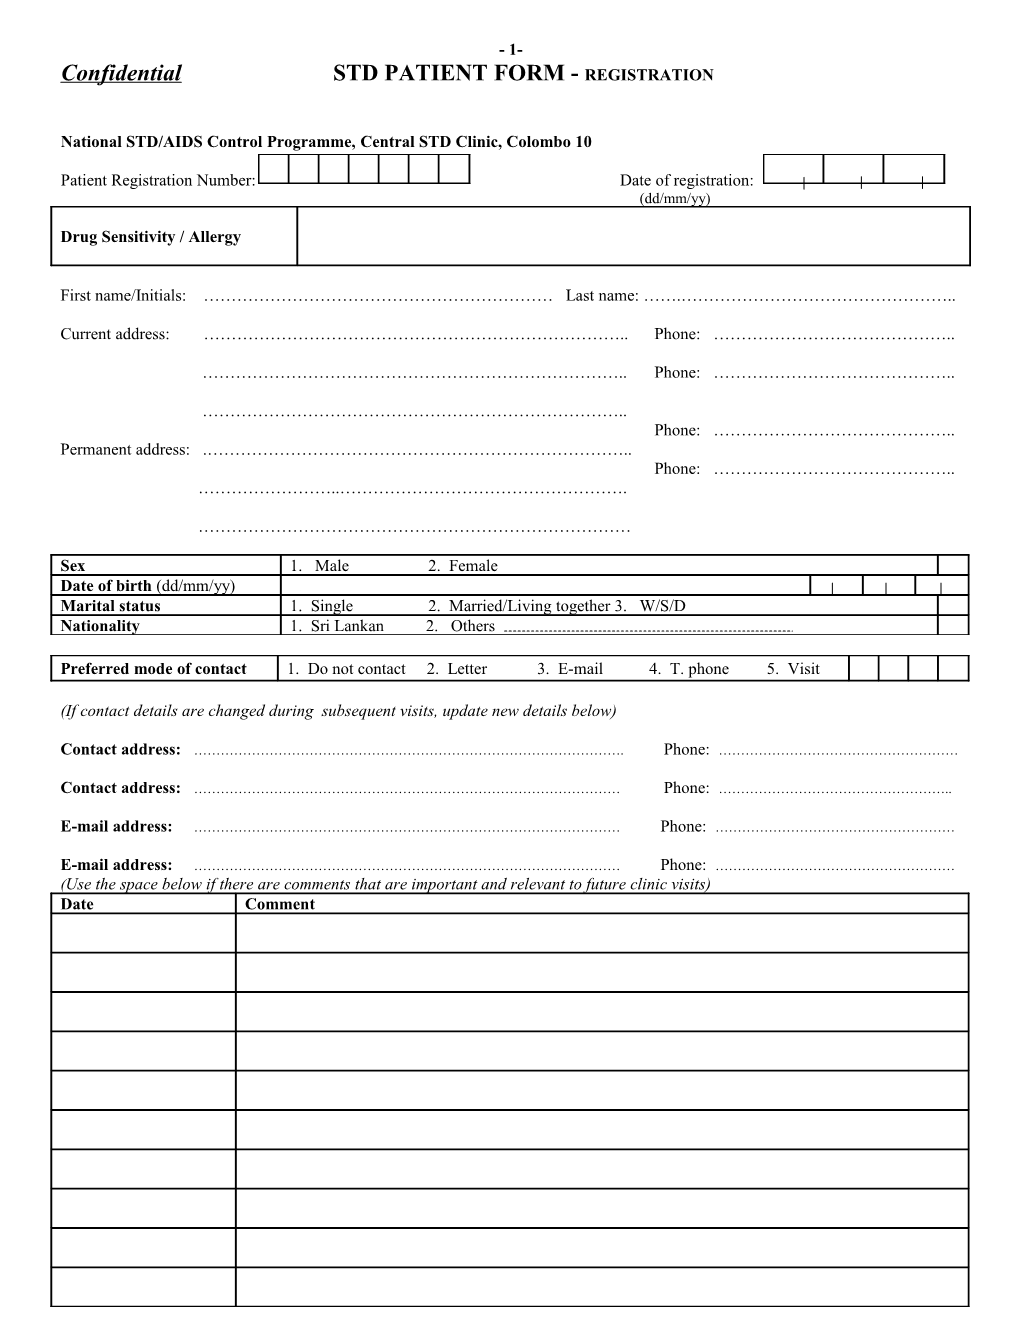 Confidential STD PATIENT FORM - REGISTRATION